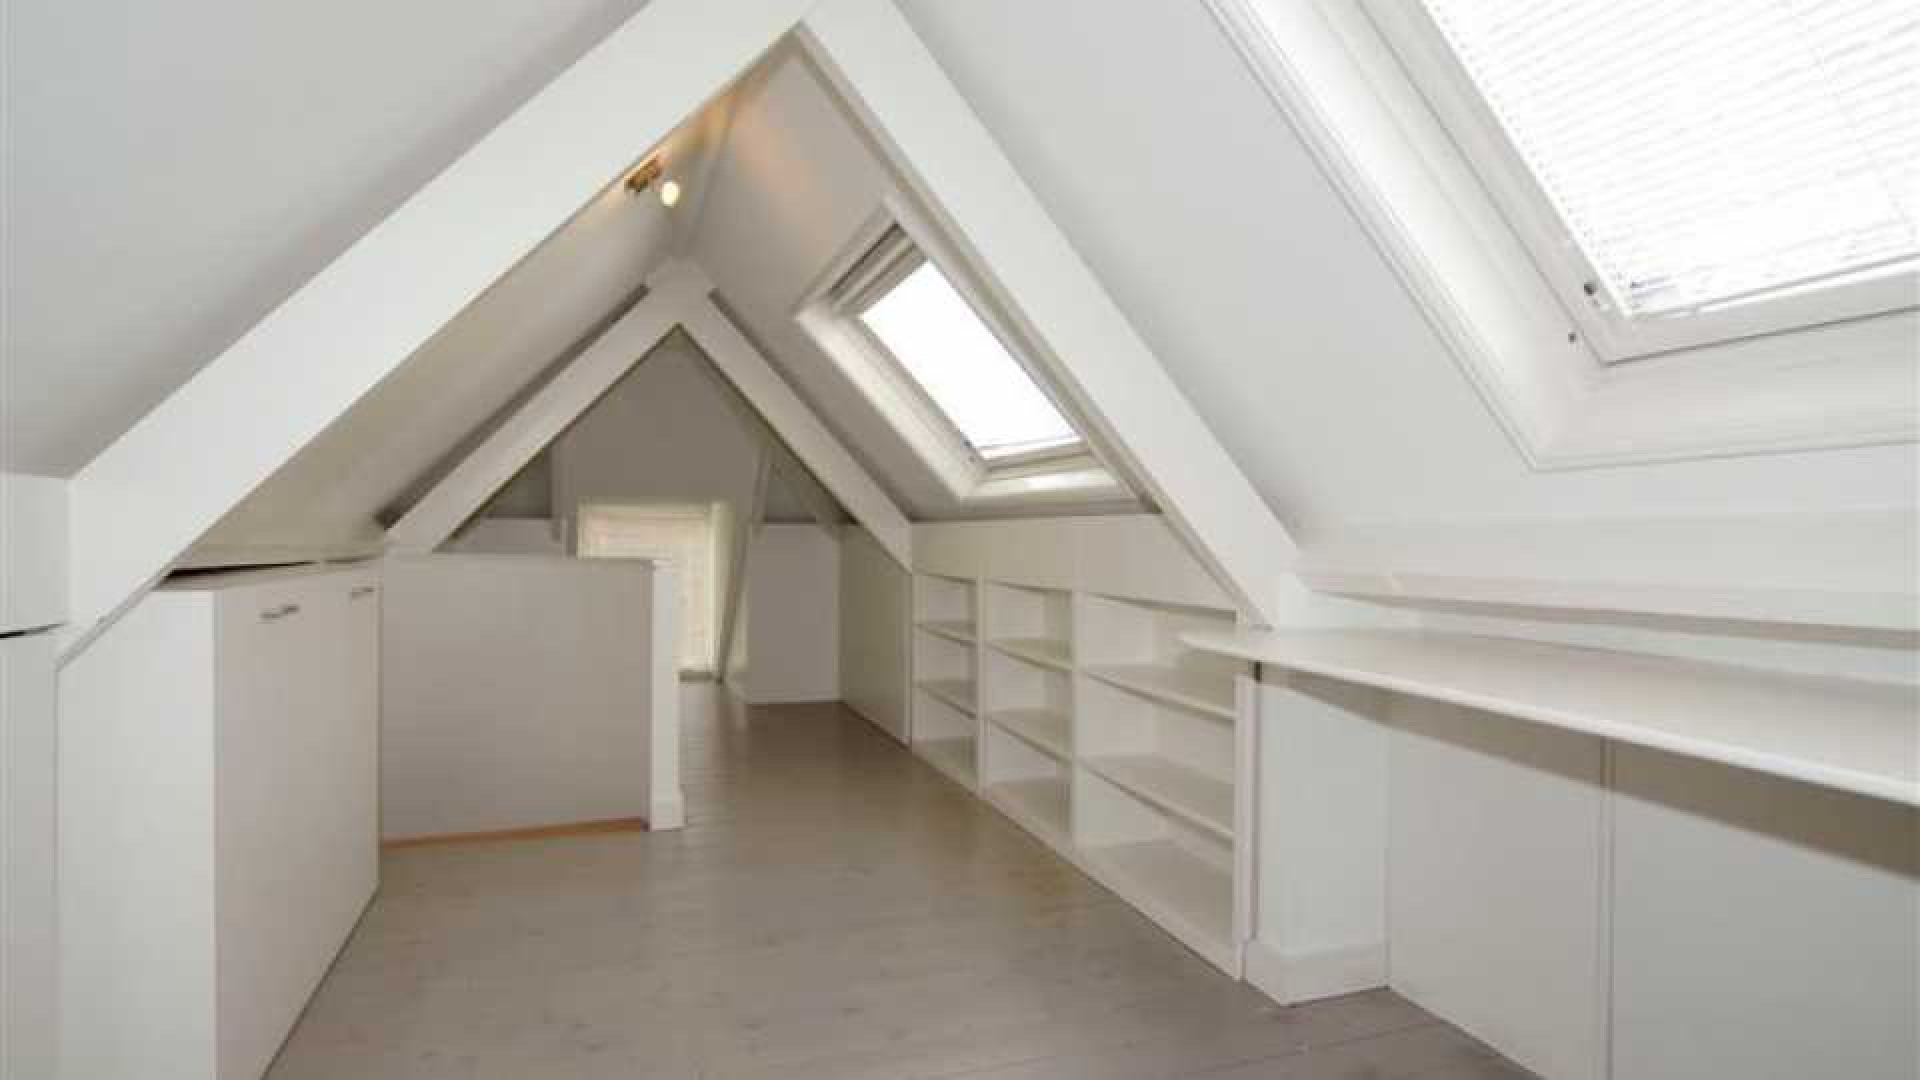 Frits Wester huurt appartement in Voorburg in de buurt van zijn ex!, Zie foto's 8